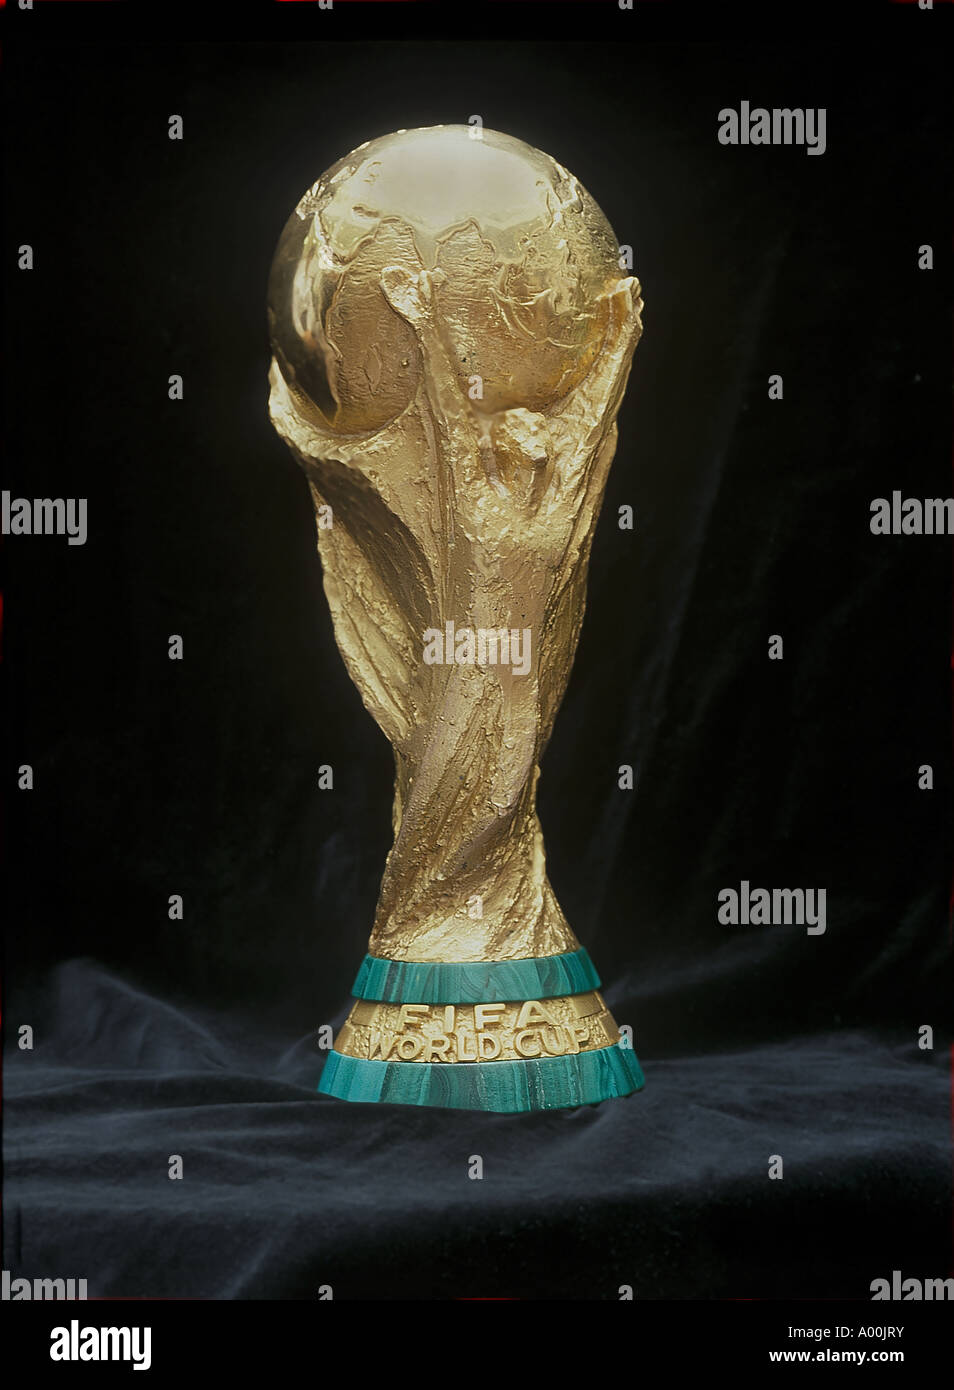 En compétition pour la coupe du monde de la fifa, par les nations de football du monde sur l'affichage public à Londres en 1995 Banque D'Images